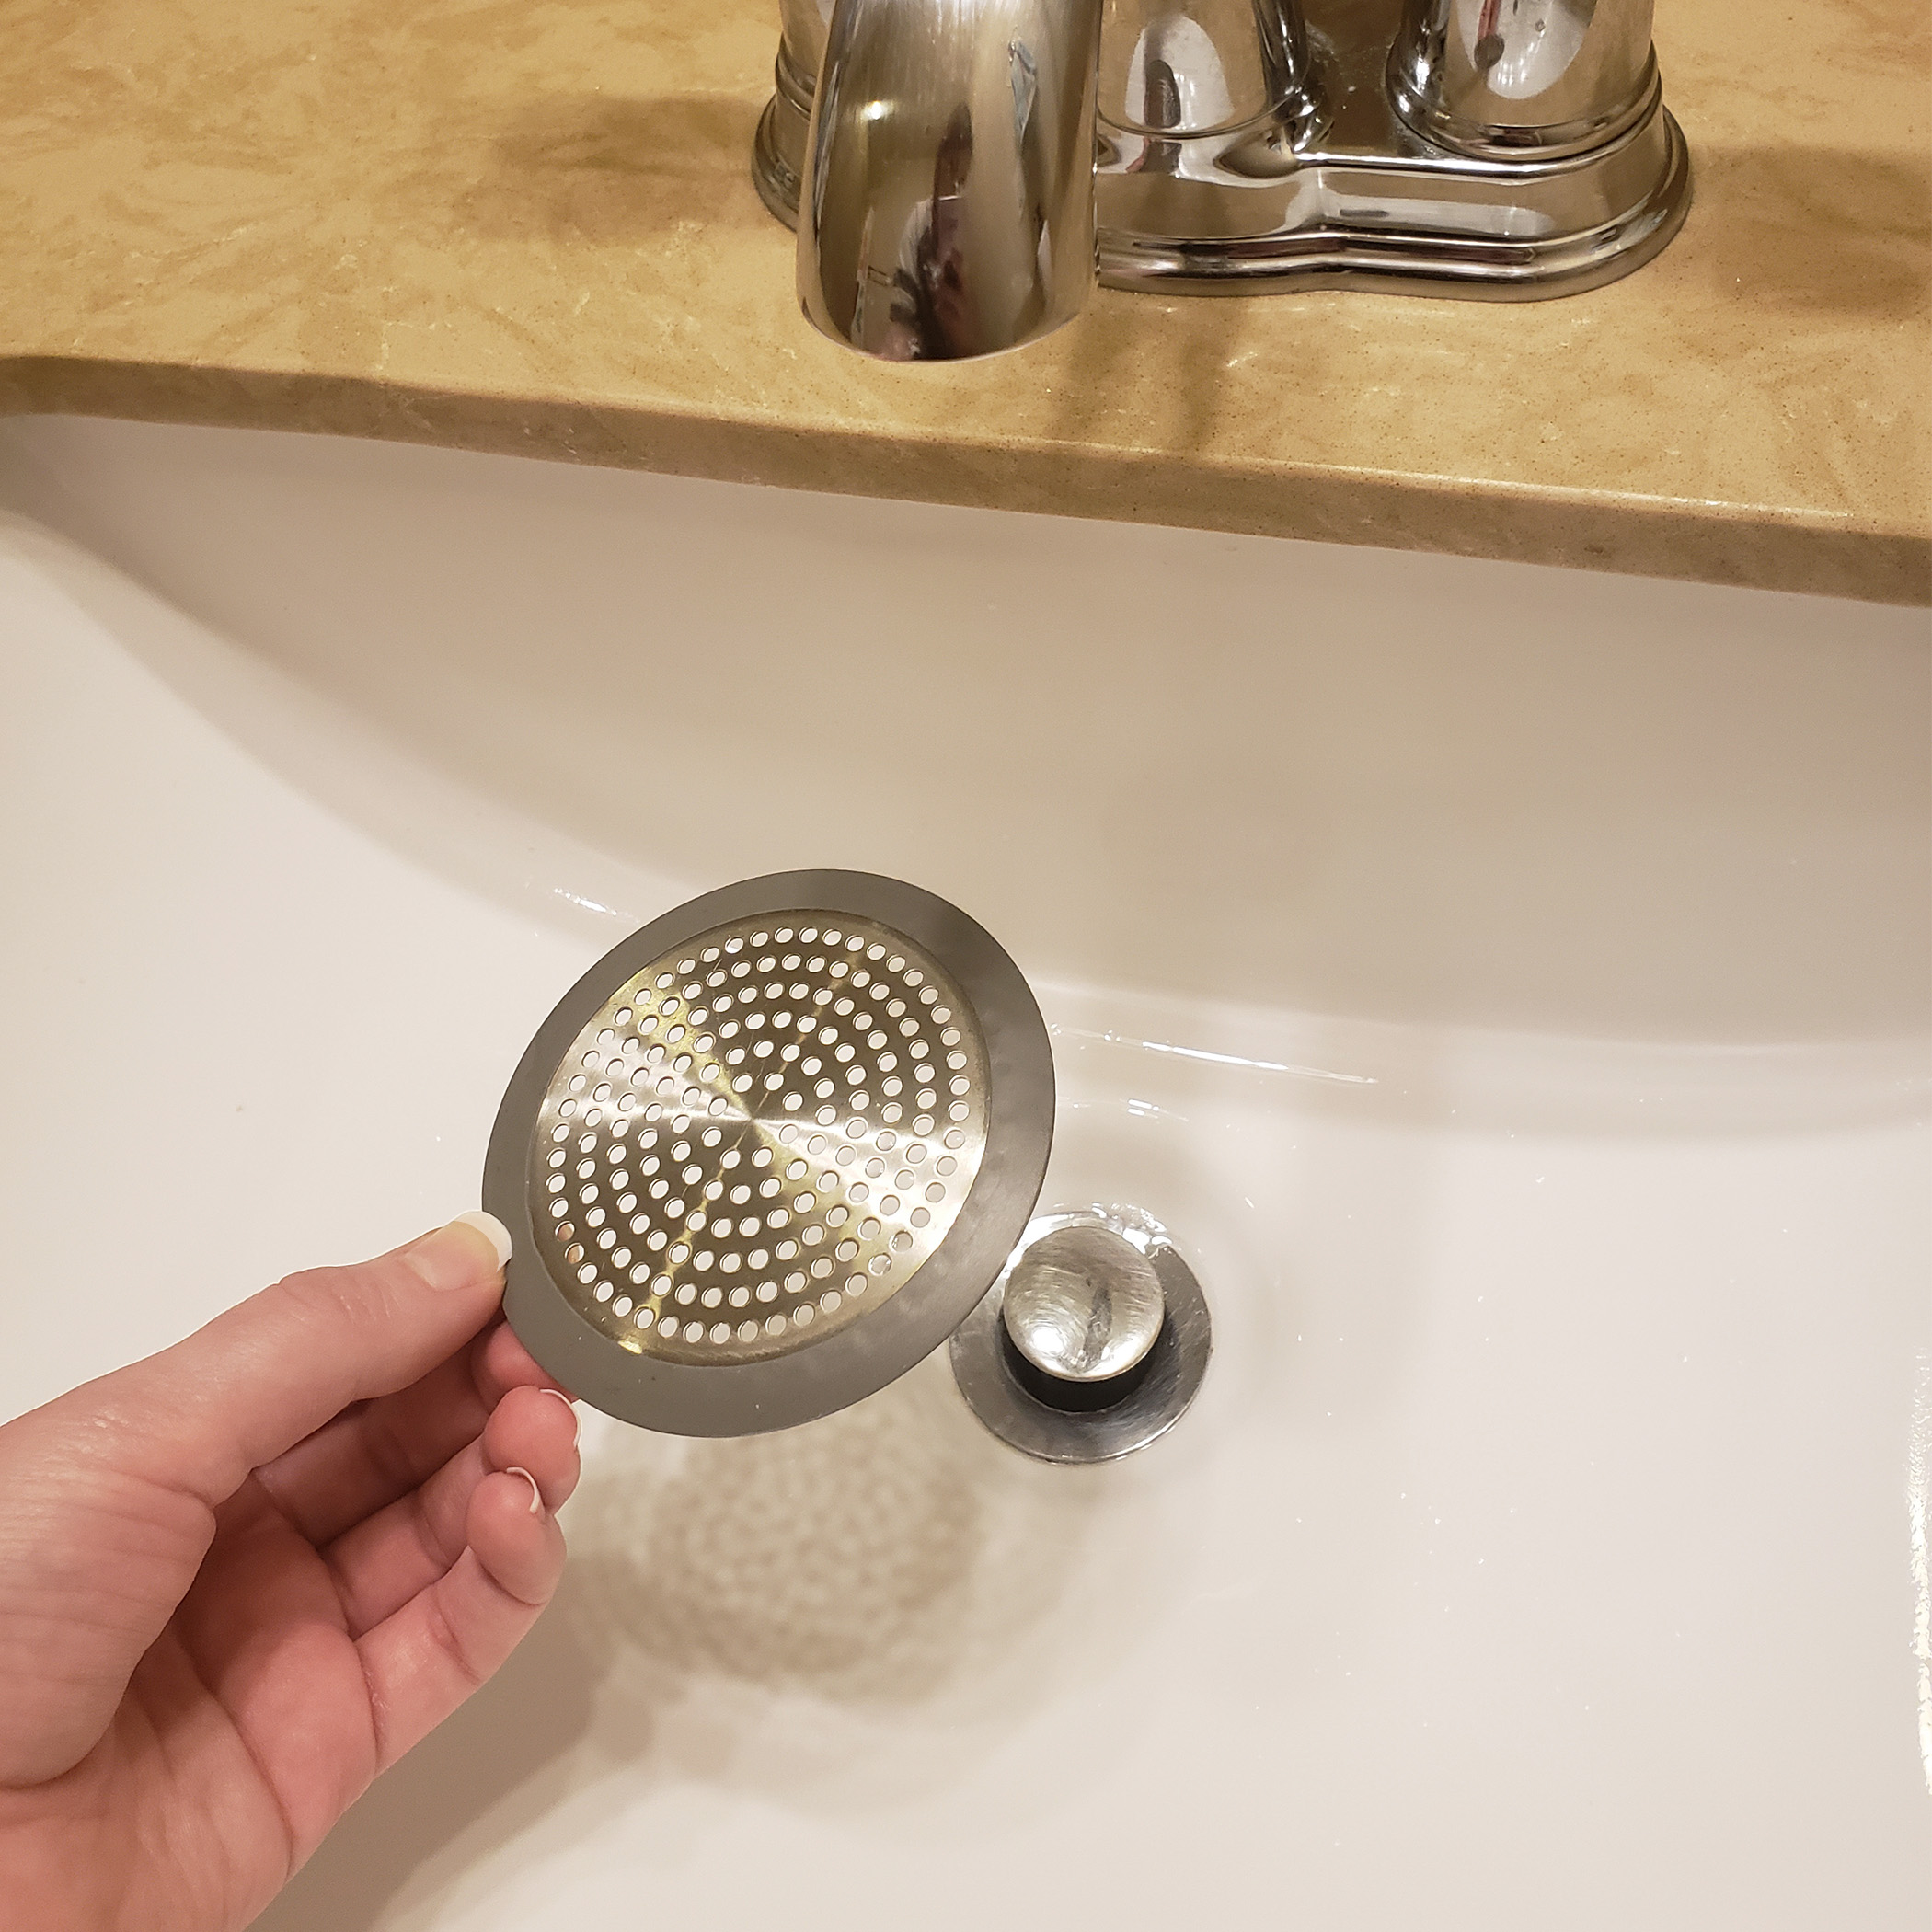 Bathroom Sink/Bathtub Hair Catcher & Drain Protector in Brushed Nickel  (2-Pack) - Danco